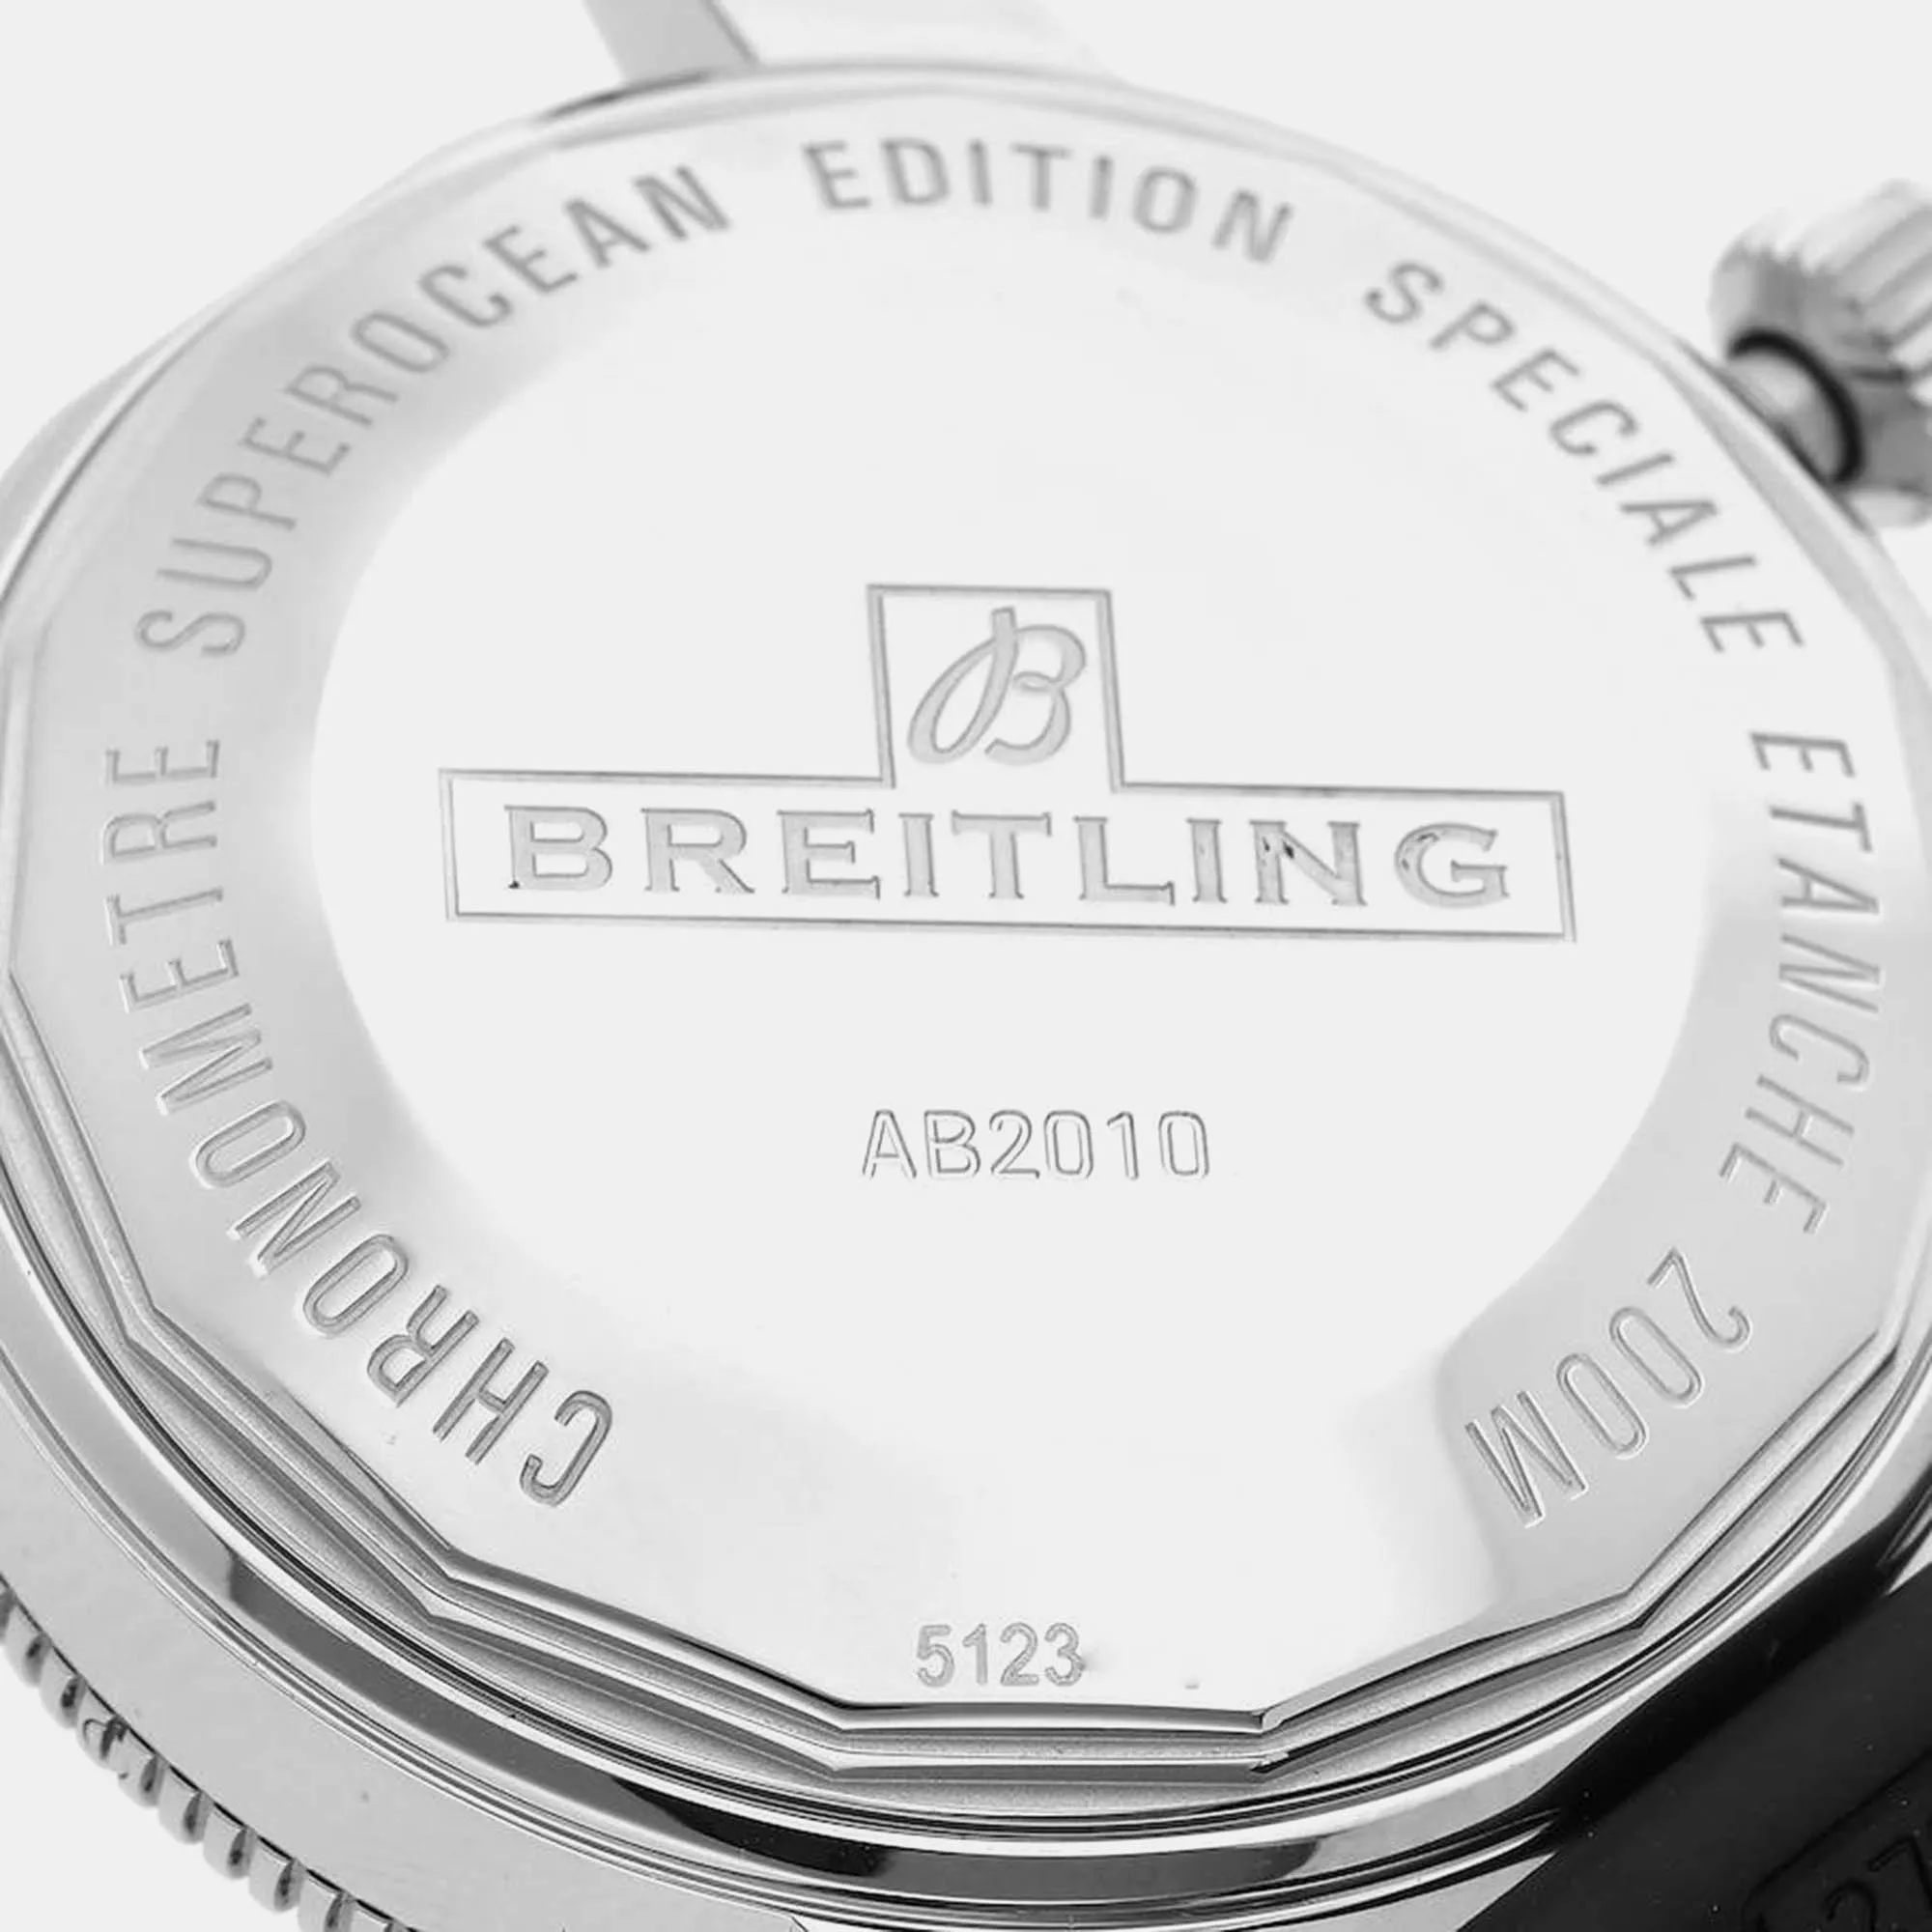 Breitling Superocean Heritage II 42 AB2010 42mm Stainless steel 6